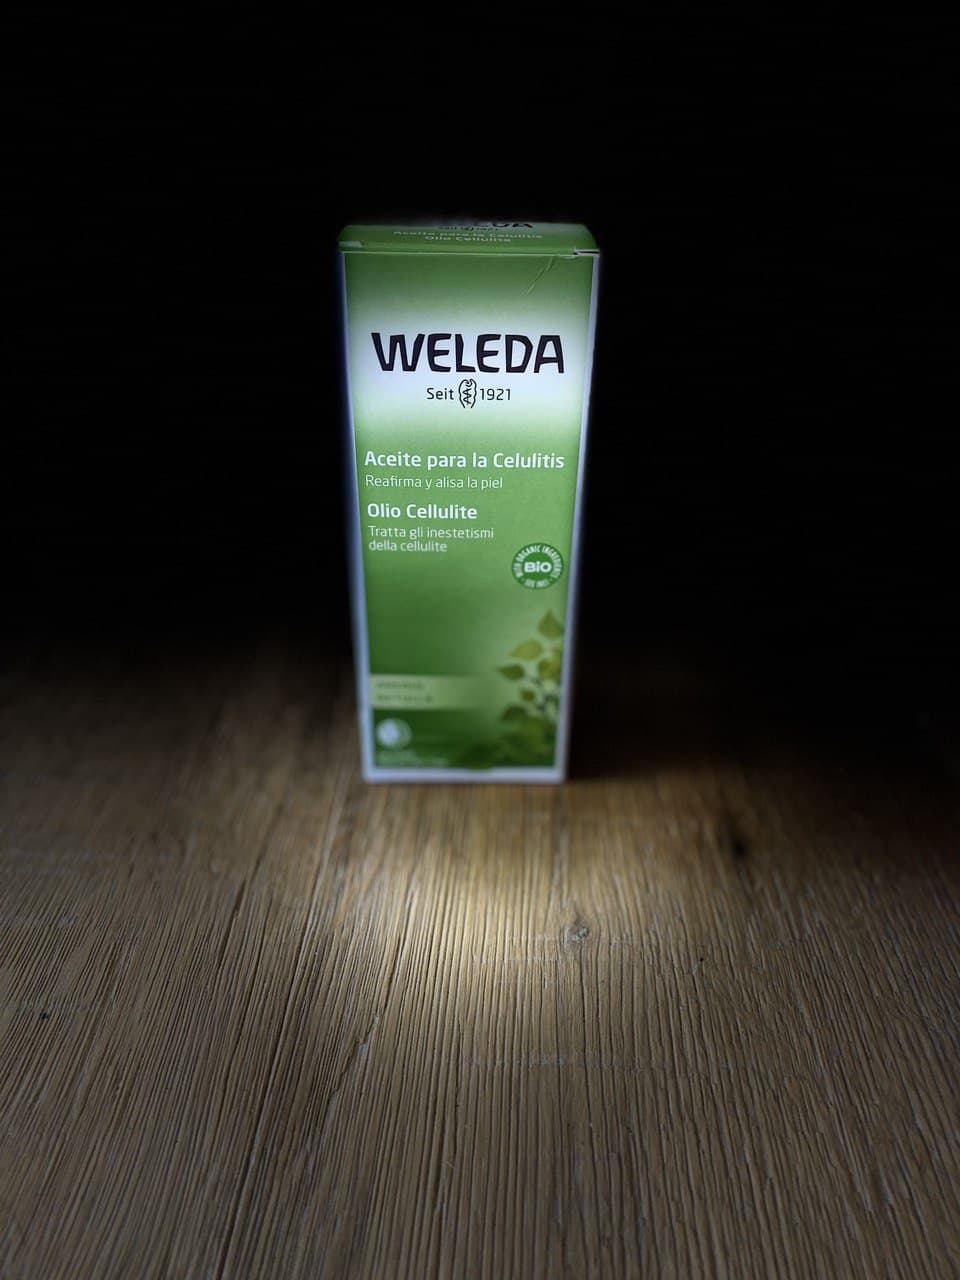 Aceite de Abedul para la Celulitis Weleda